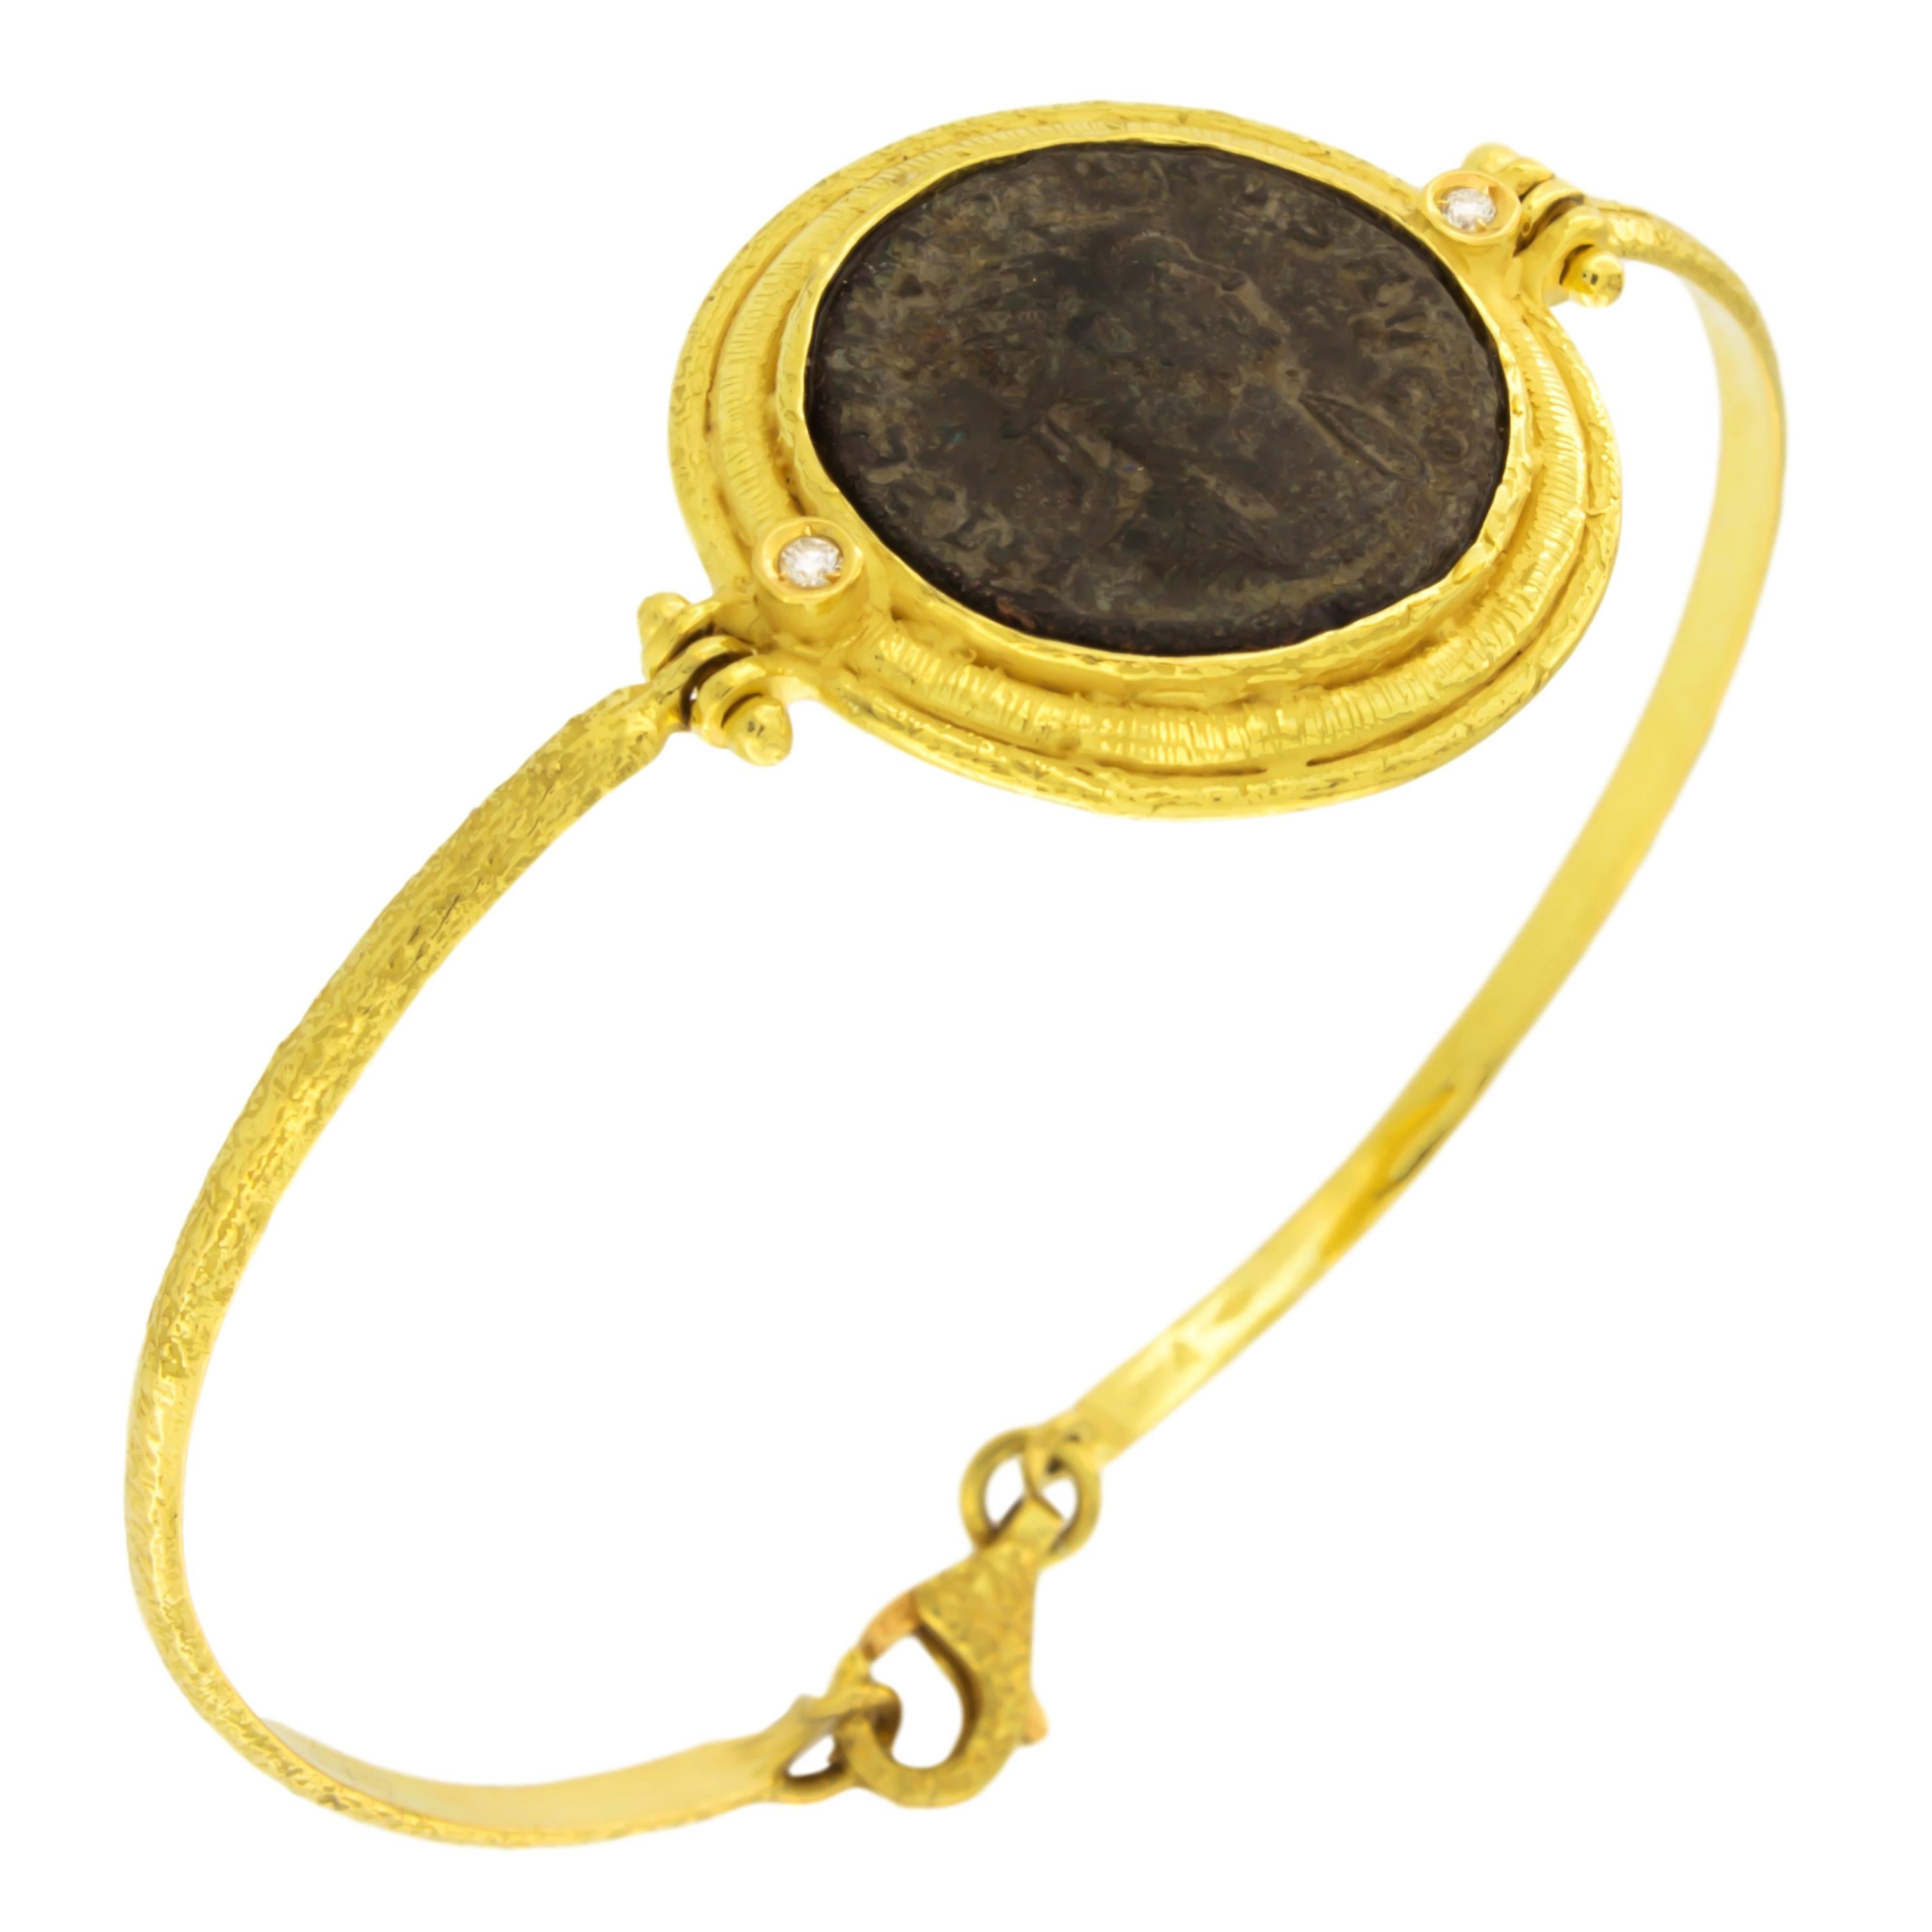 Sacchi Pulsera de Oro Amarillo de 18 Kilates con Moneda Romana Antigua y Piedra Preciosa de Diamantes